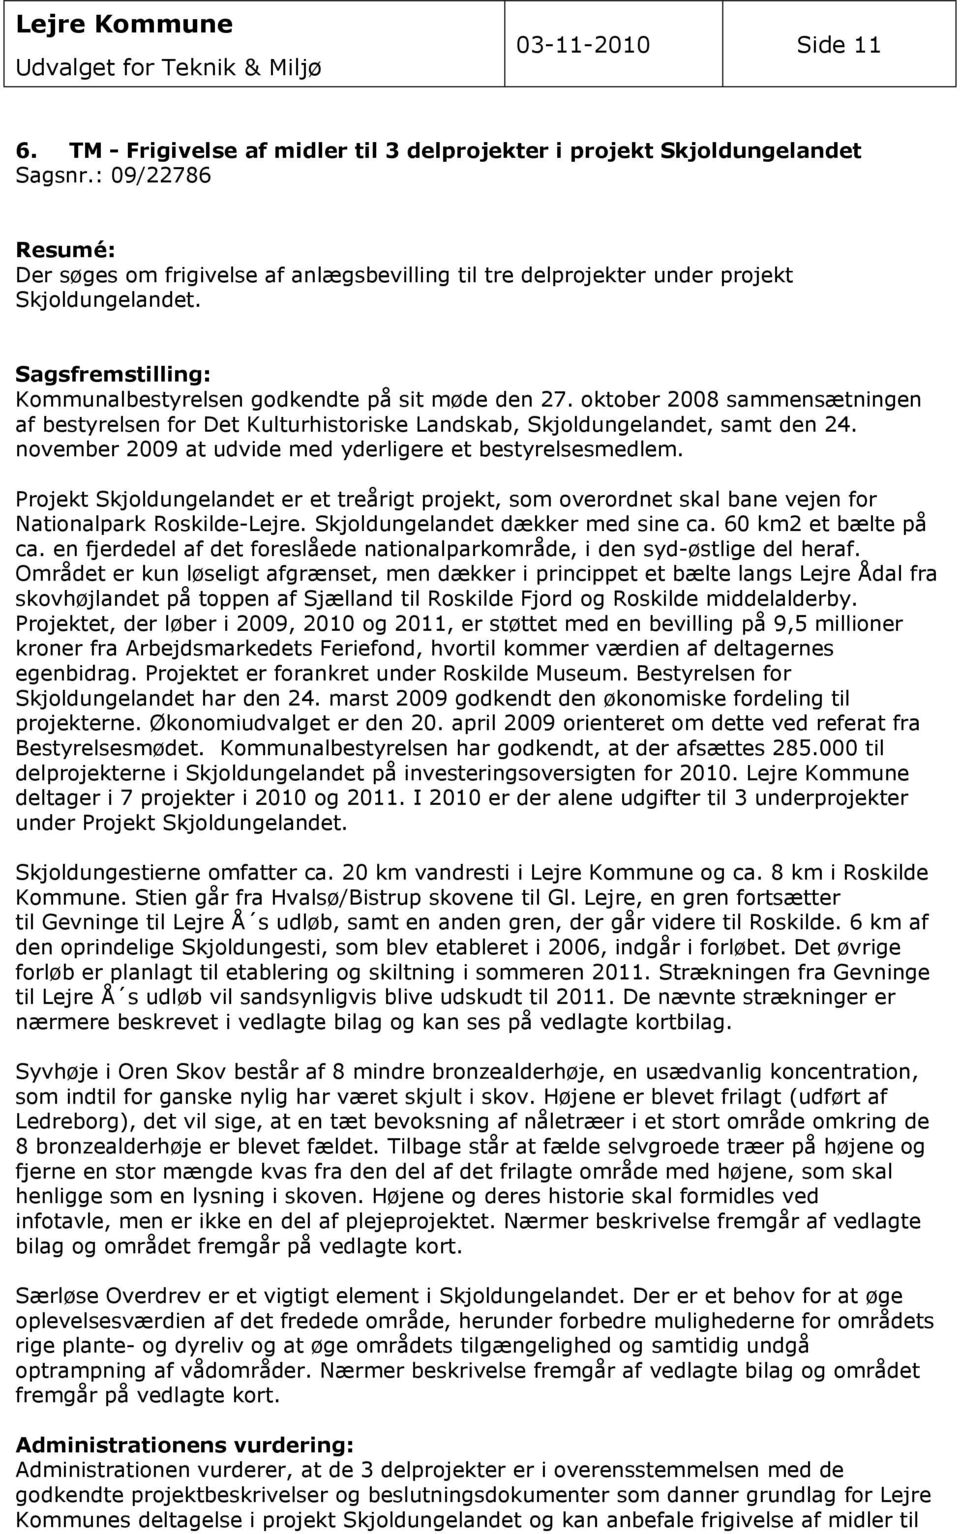 oktober 2008 sammensætningen af bestyrelsen for Det Kulturhistoriske Landskab, Skjoldungelandet, samt den 24. november 2009 at udvide med yderligere et bestyrelsesmedlem.